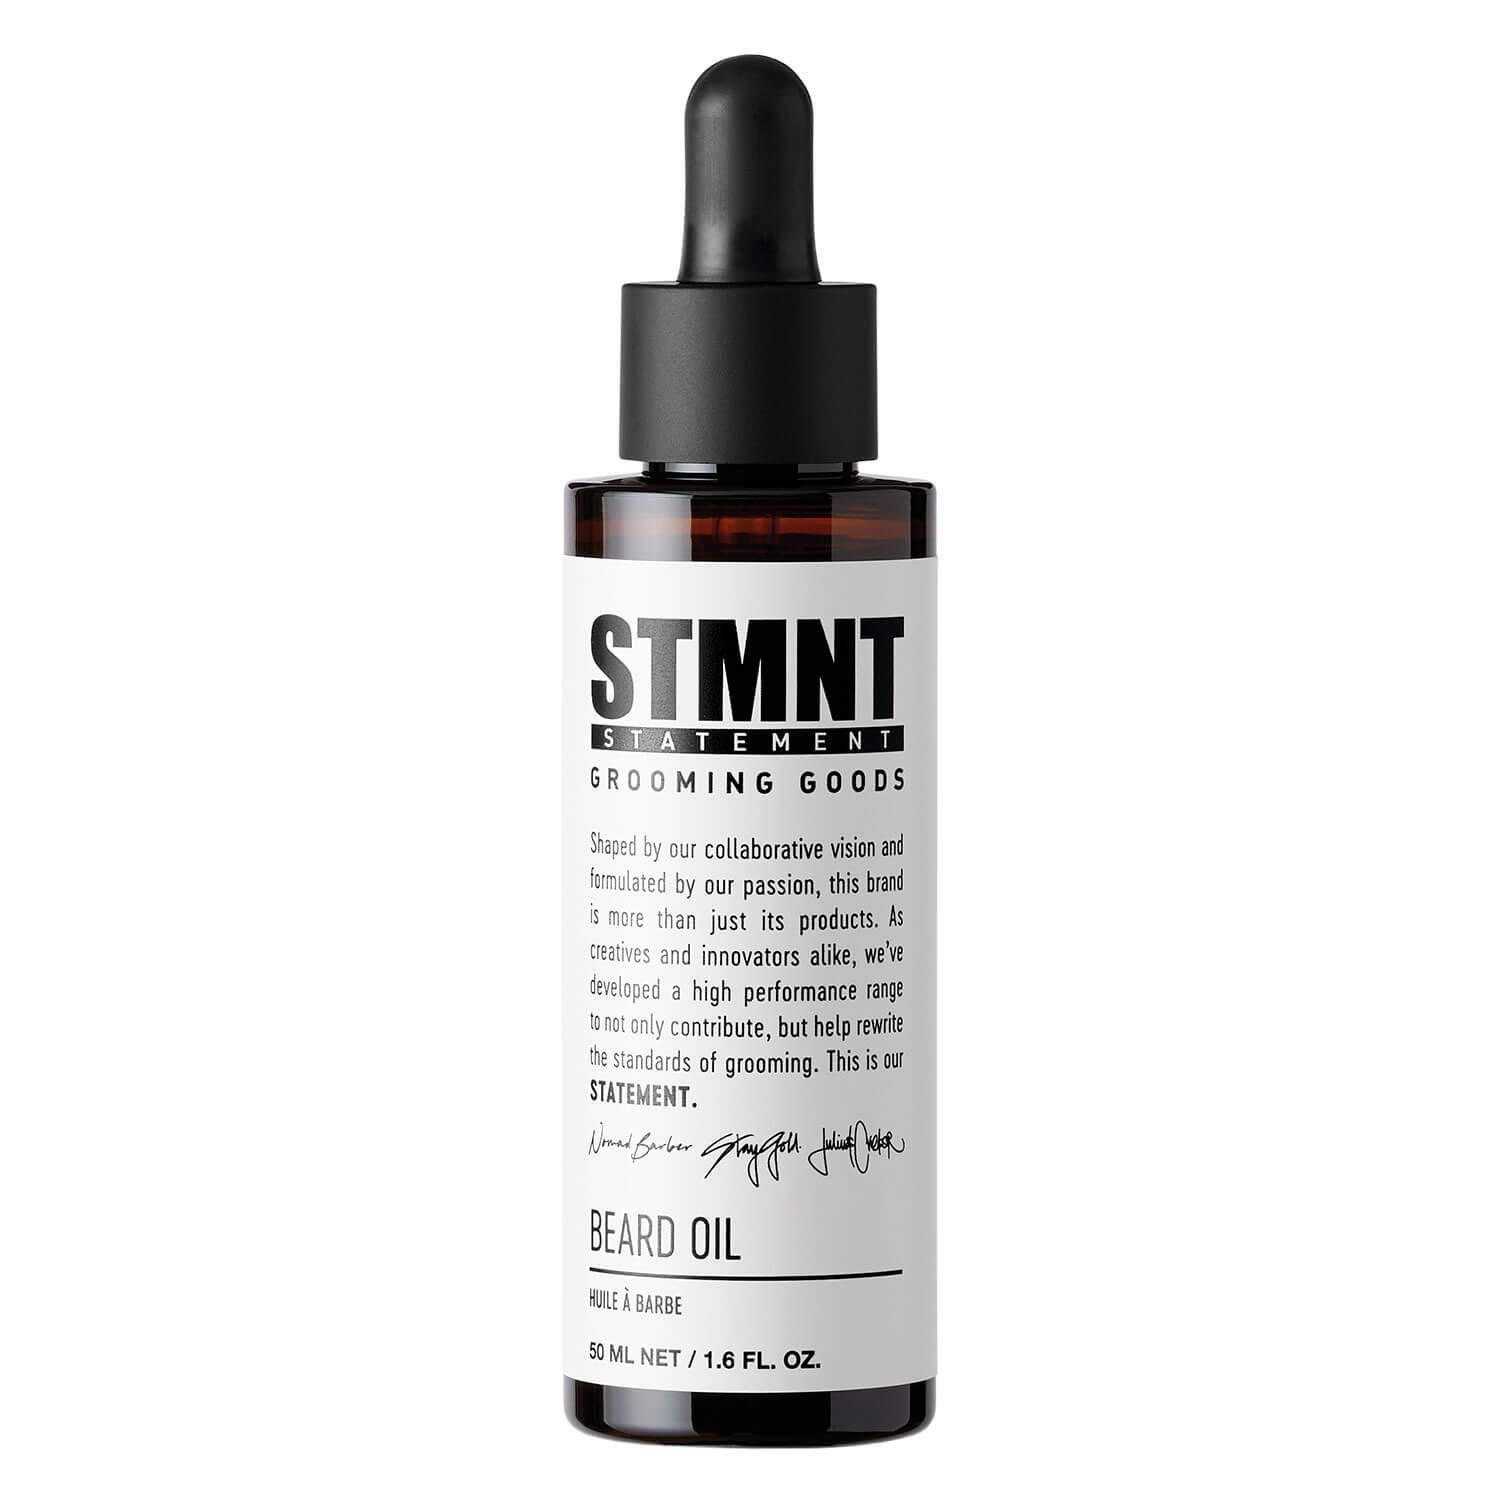 STMNT - Beard Oil